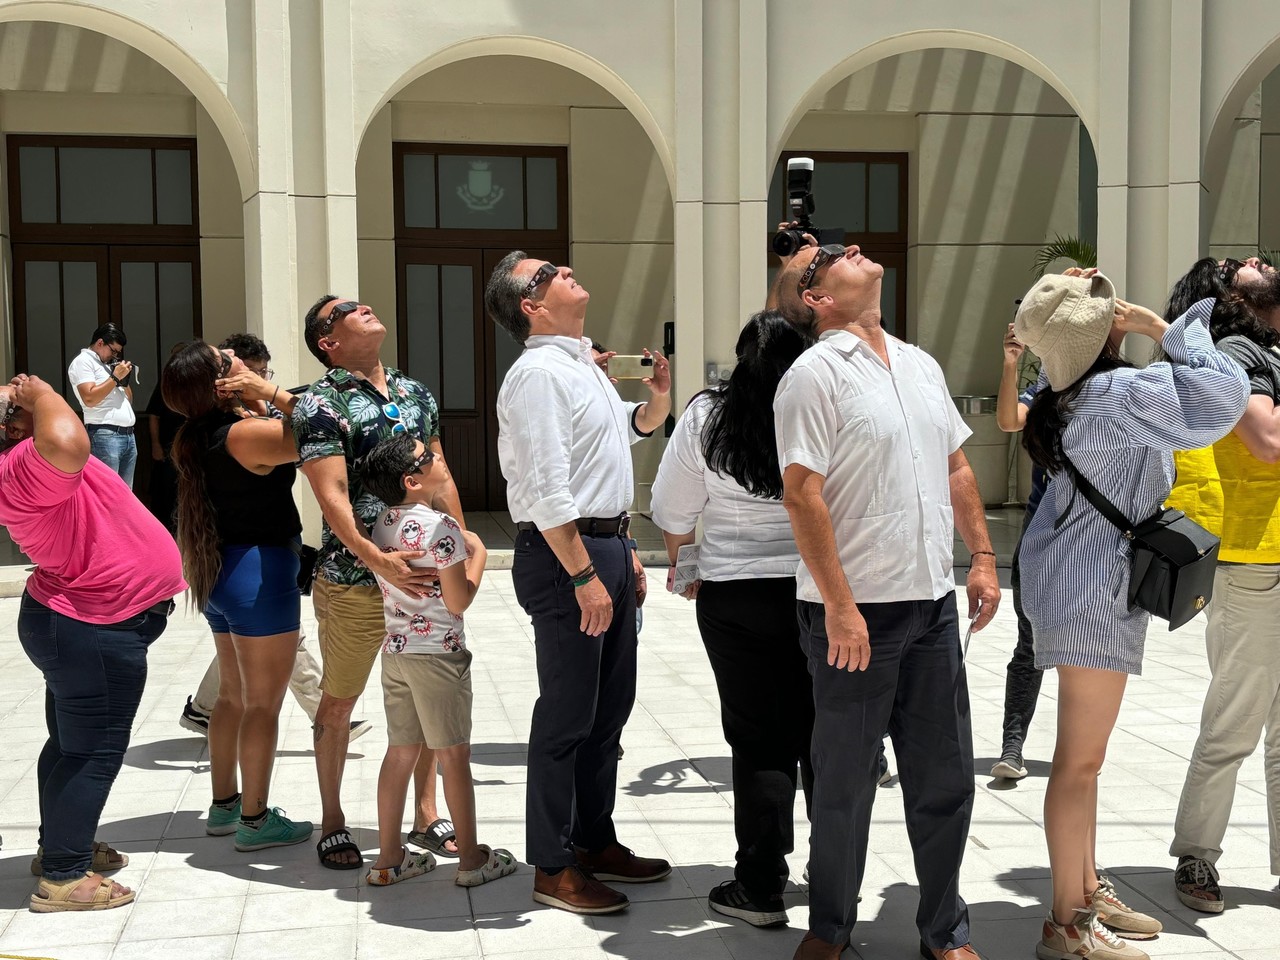 Personas observando el eclipse en el Centro Cultural Olimpo. Foto: Alejandra Vargas